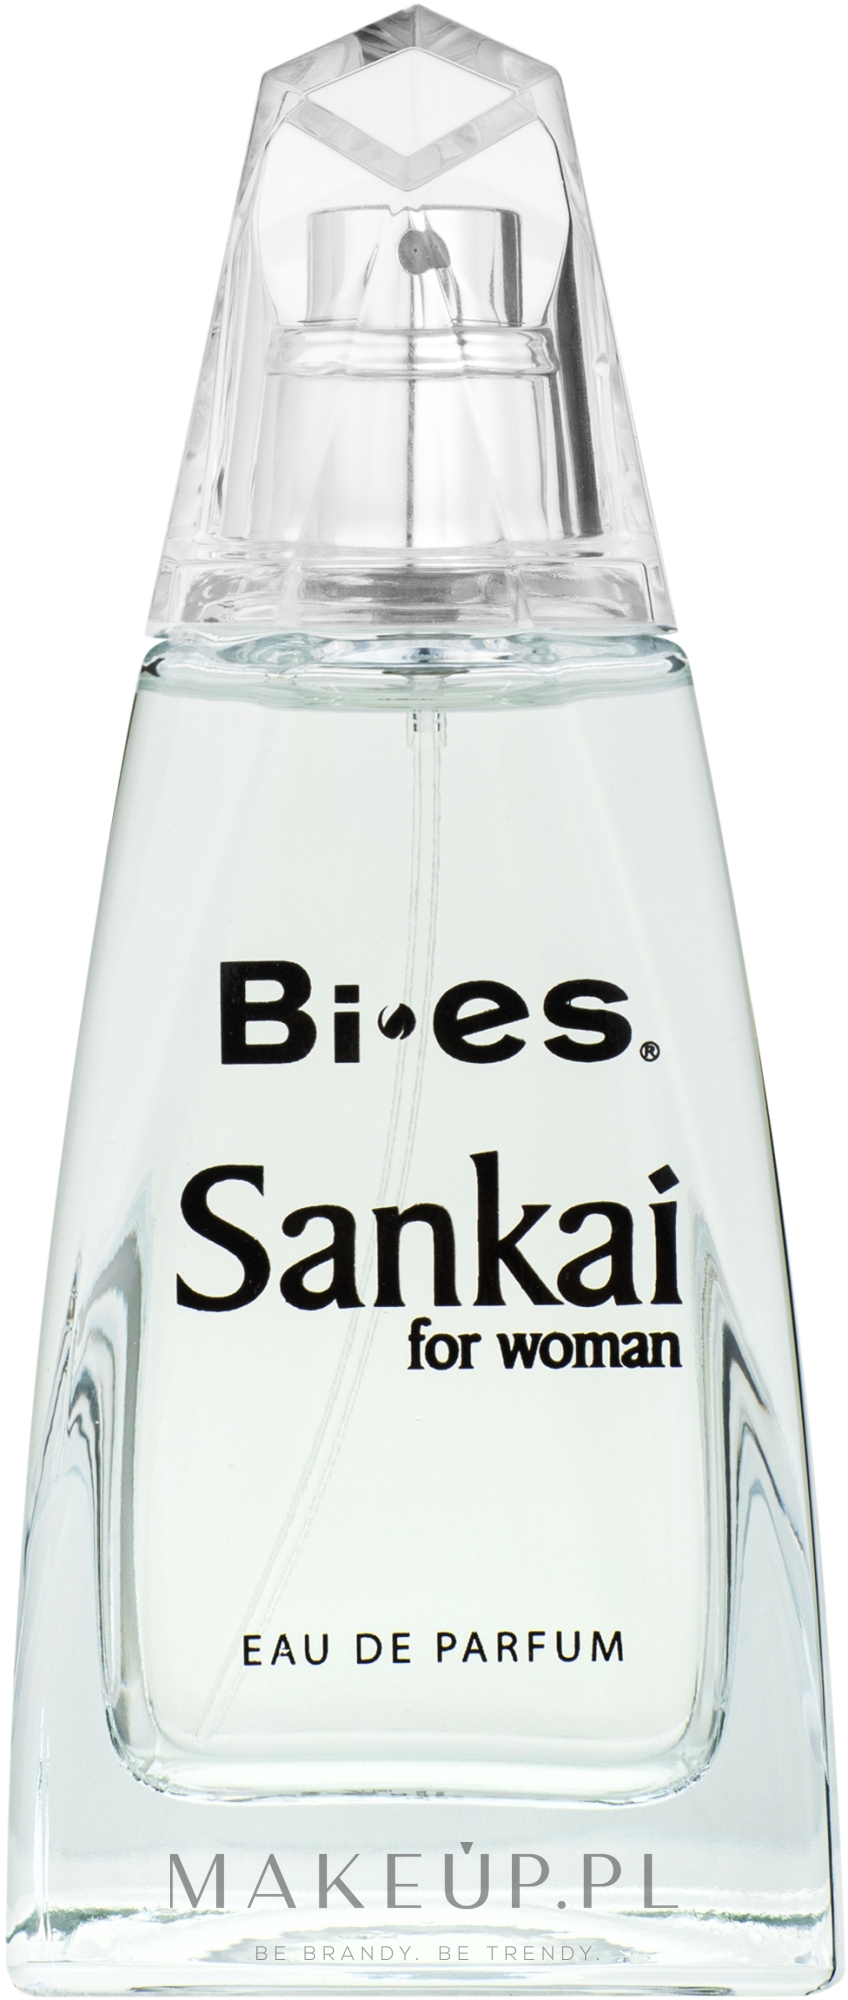 bi-es sankai for woman